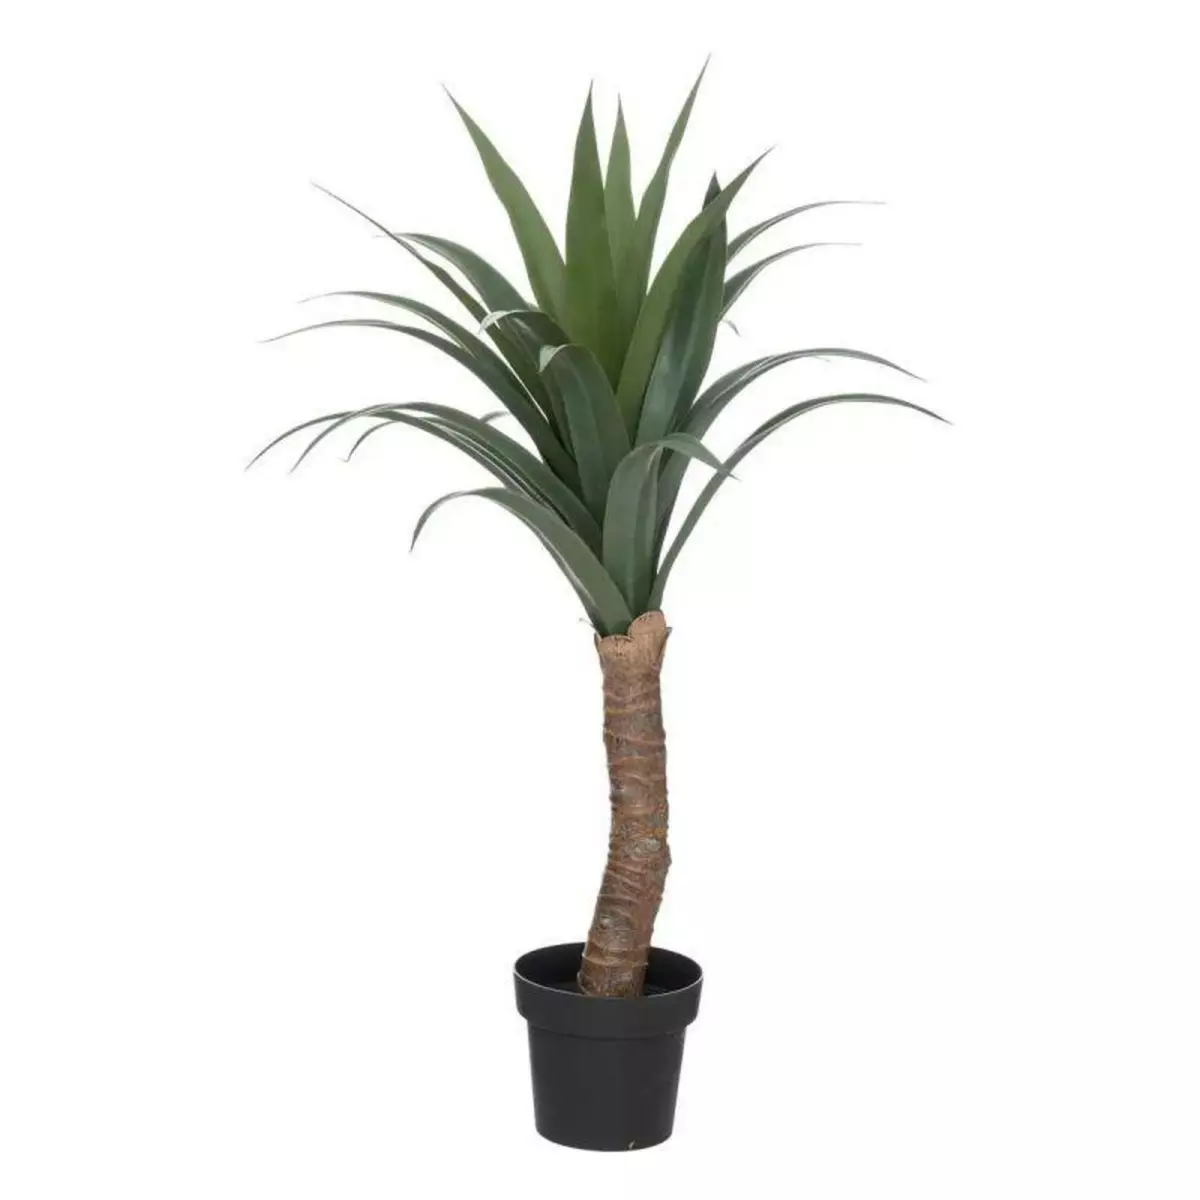  Plante Artificielle Palmier  Yucca  110cm Vert & Noir